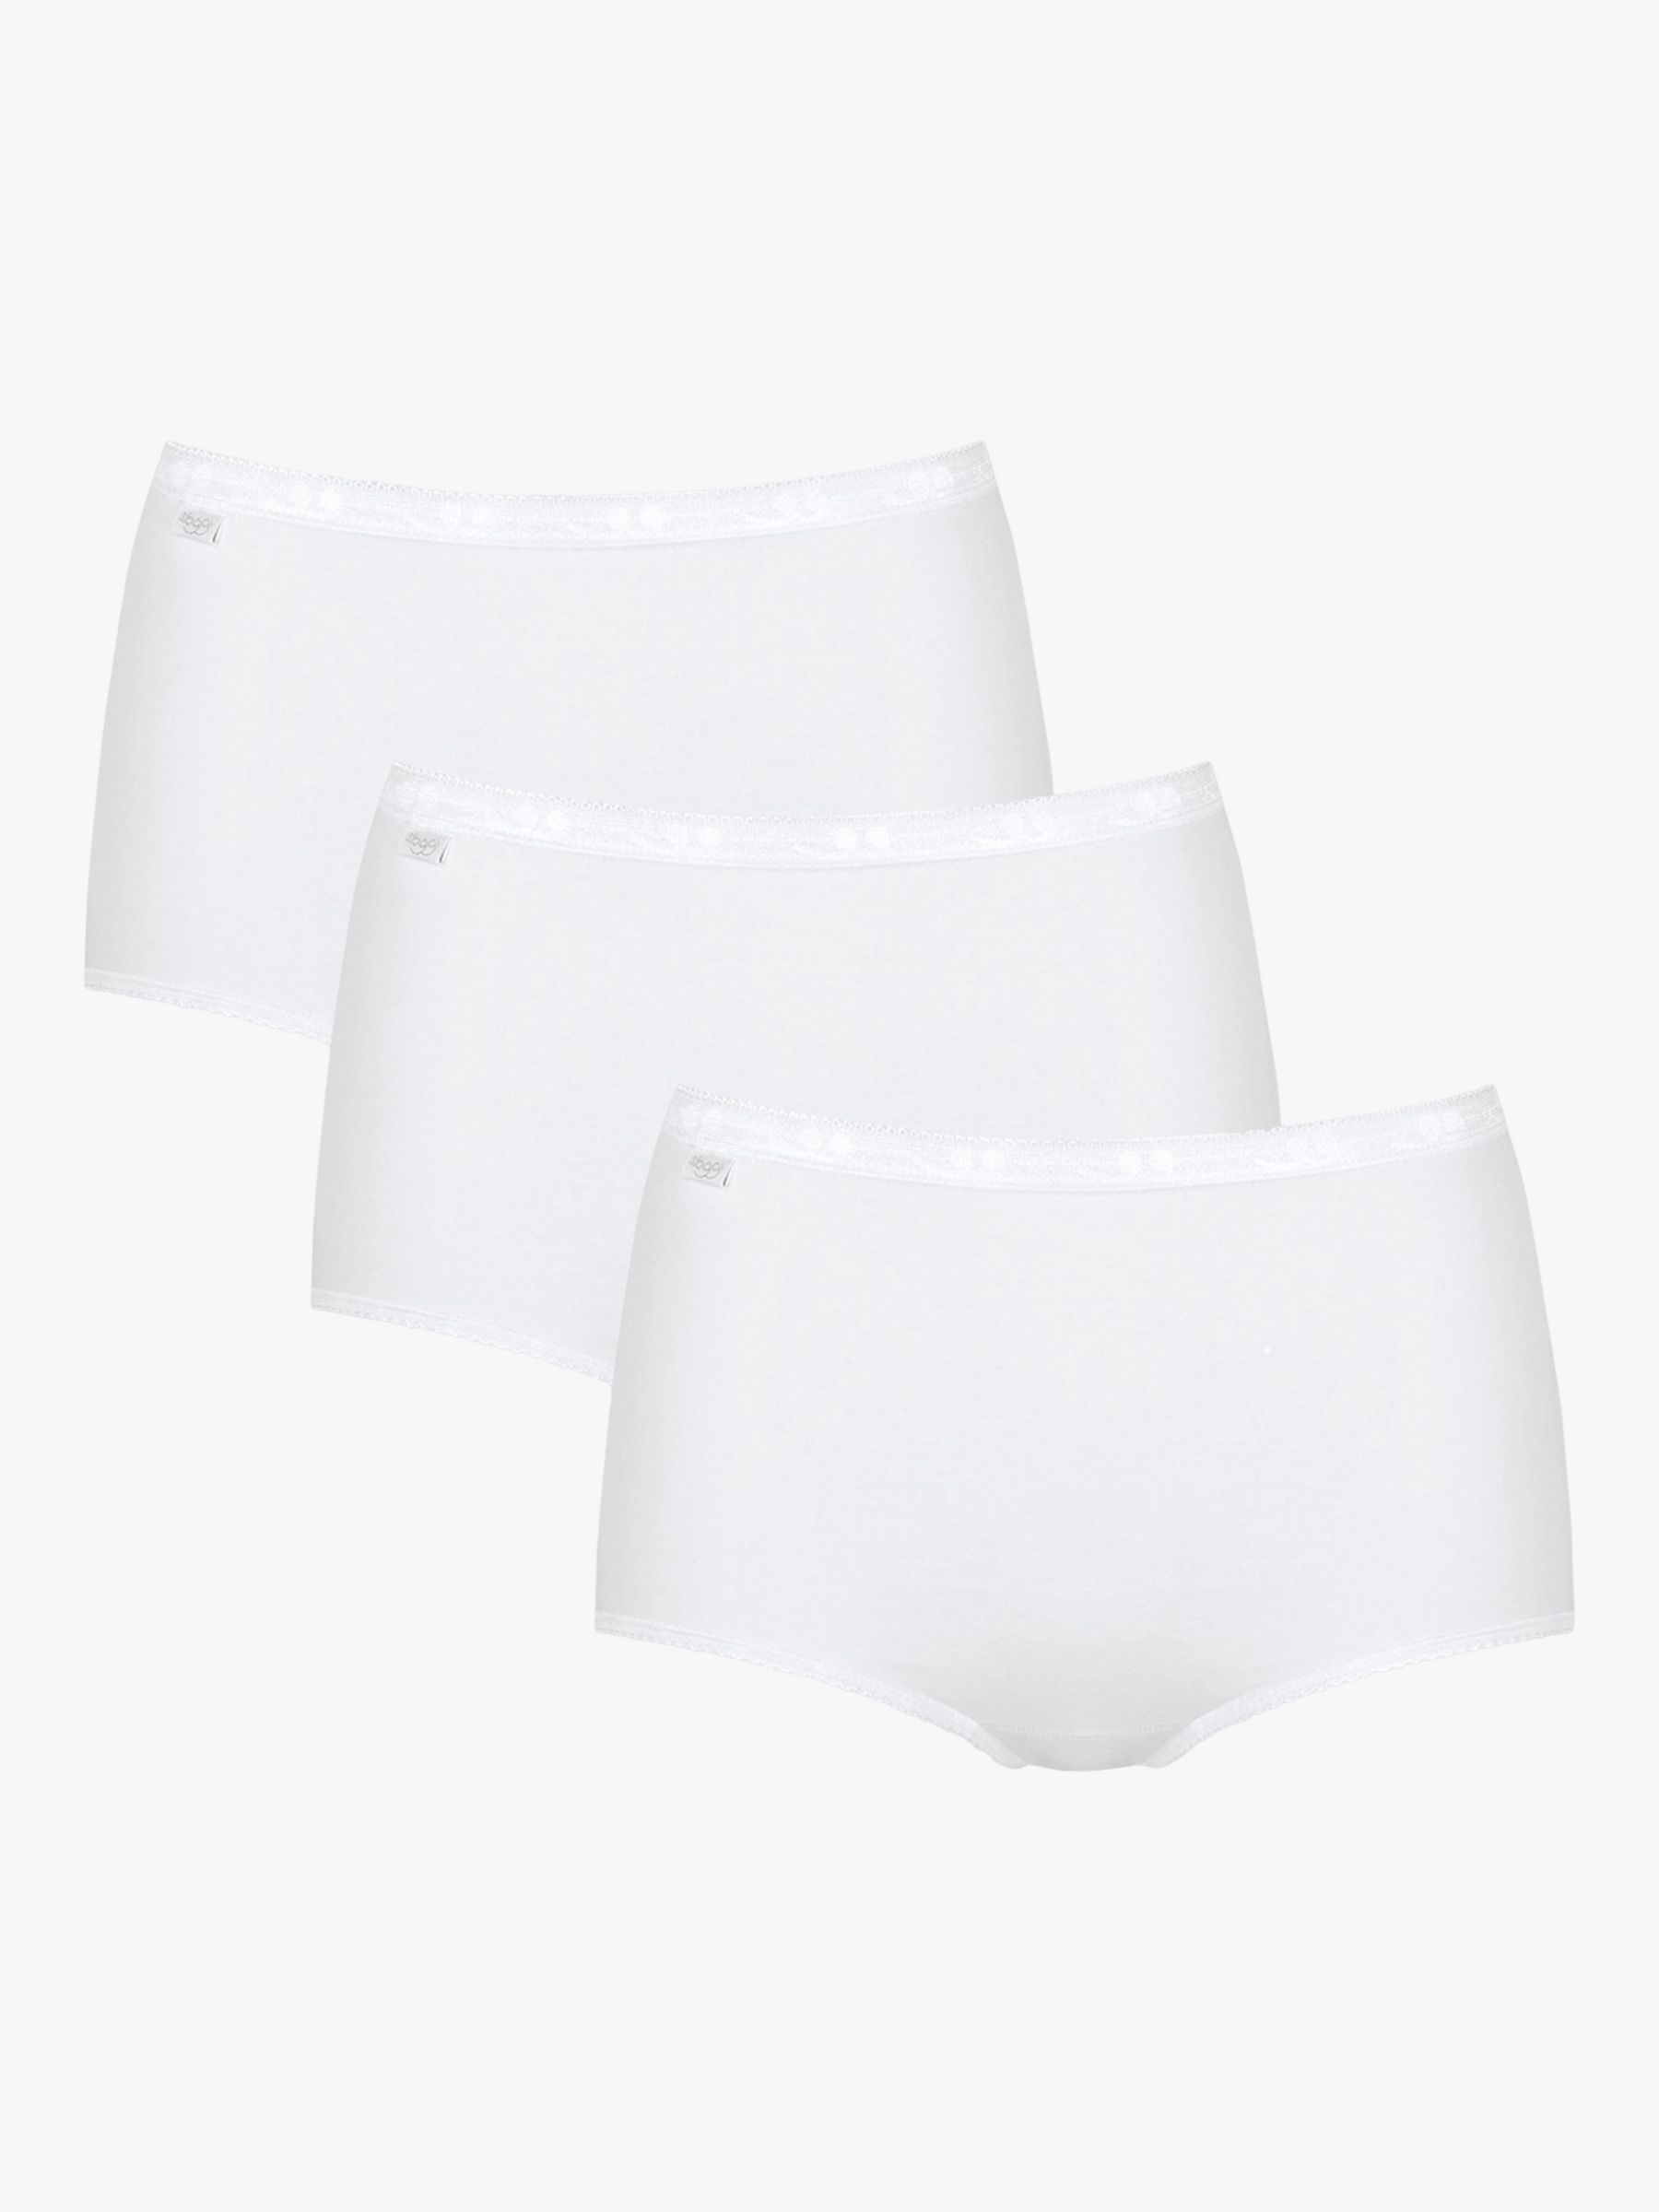 Sloggi Invisible Supreme Mini 10124861 White Womens Underwear